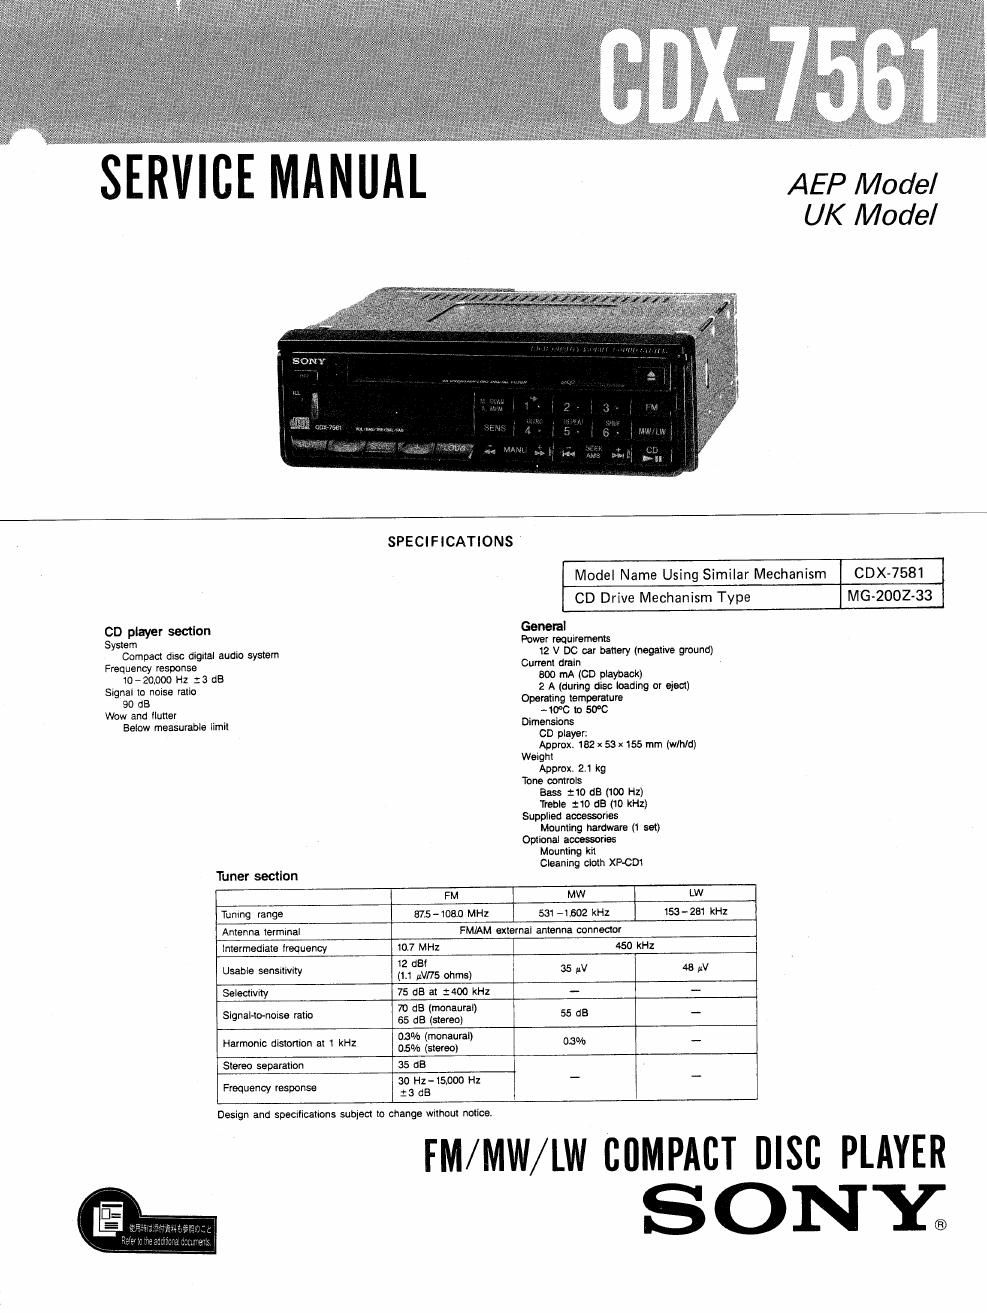 sony cdx 7561 service manual